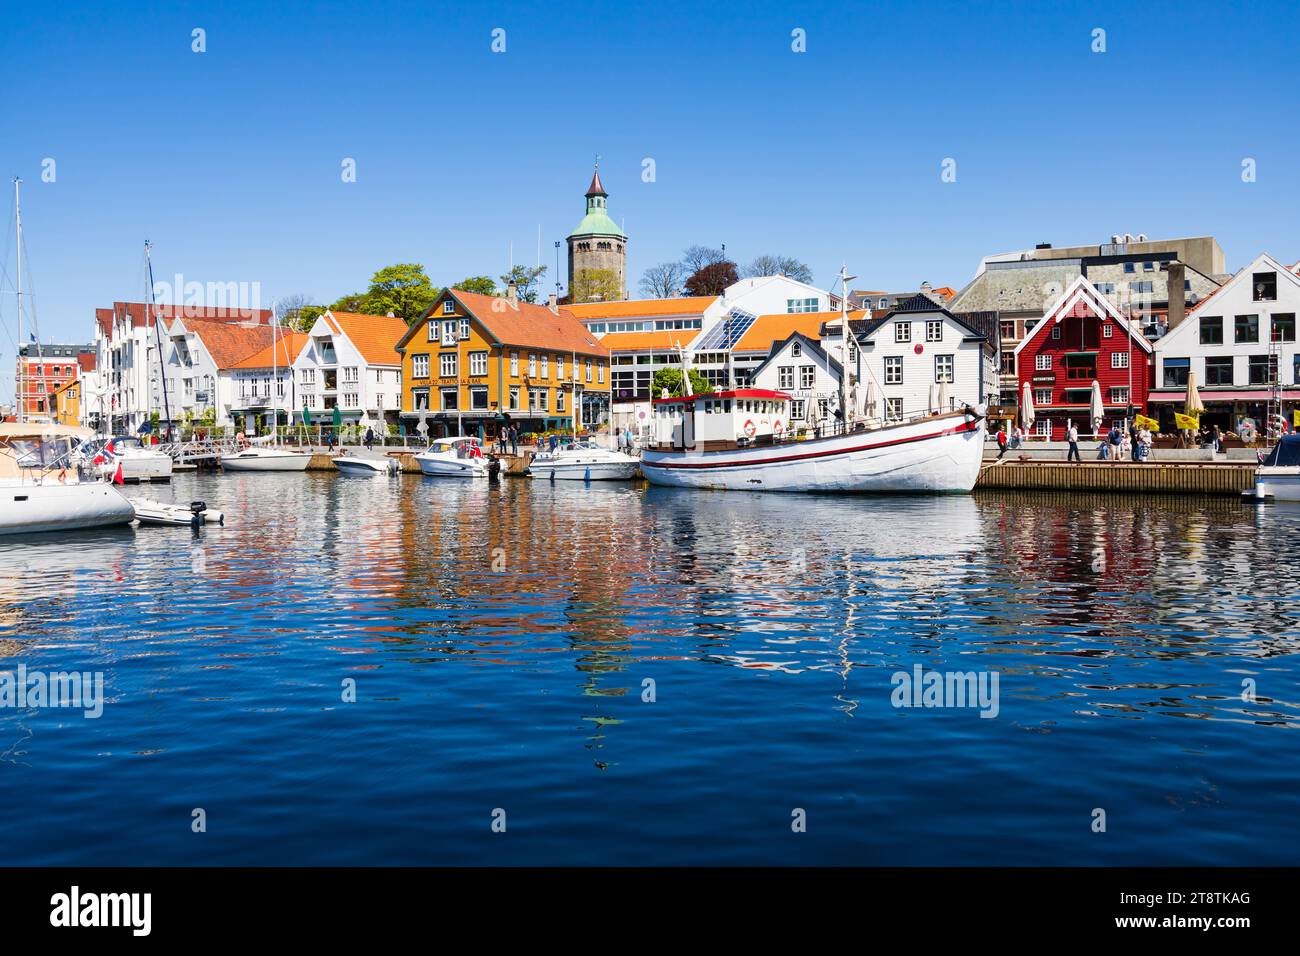 Traversez le port de Stavanger avec la Tour de surveillance de Valberg. Bateaux reflets dans l'eau, Norvège Banque D'Images